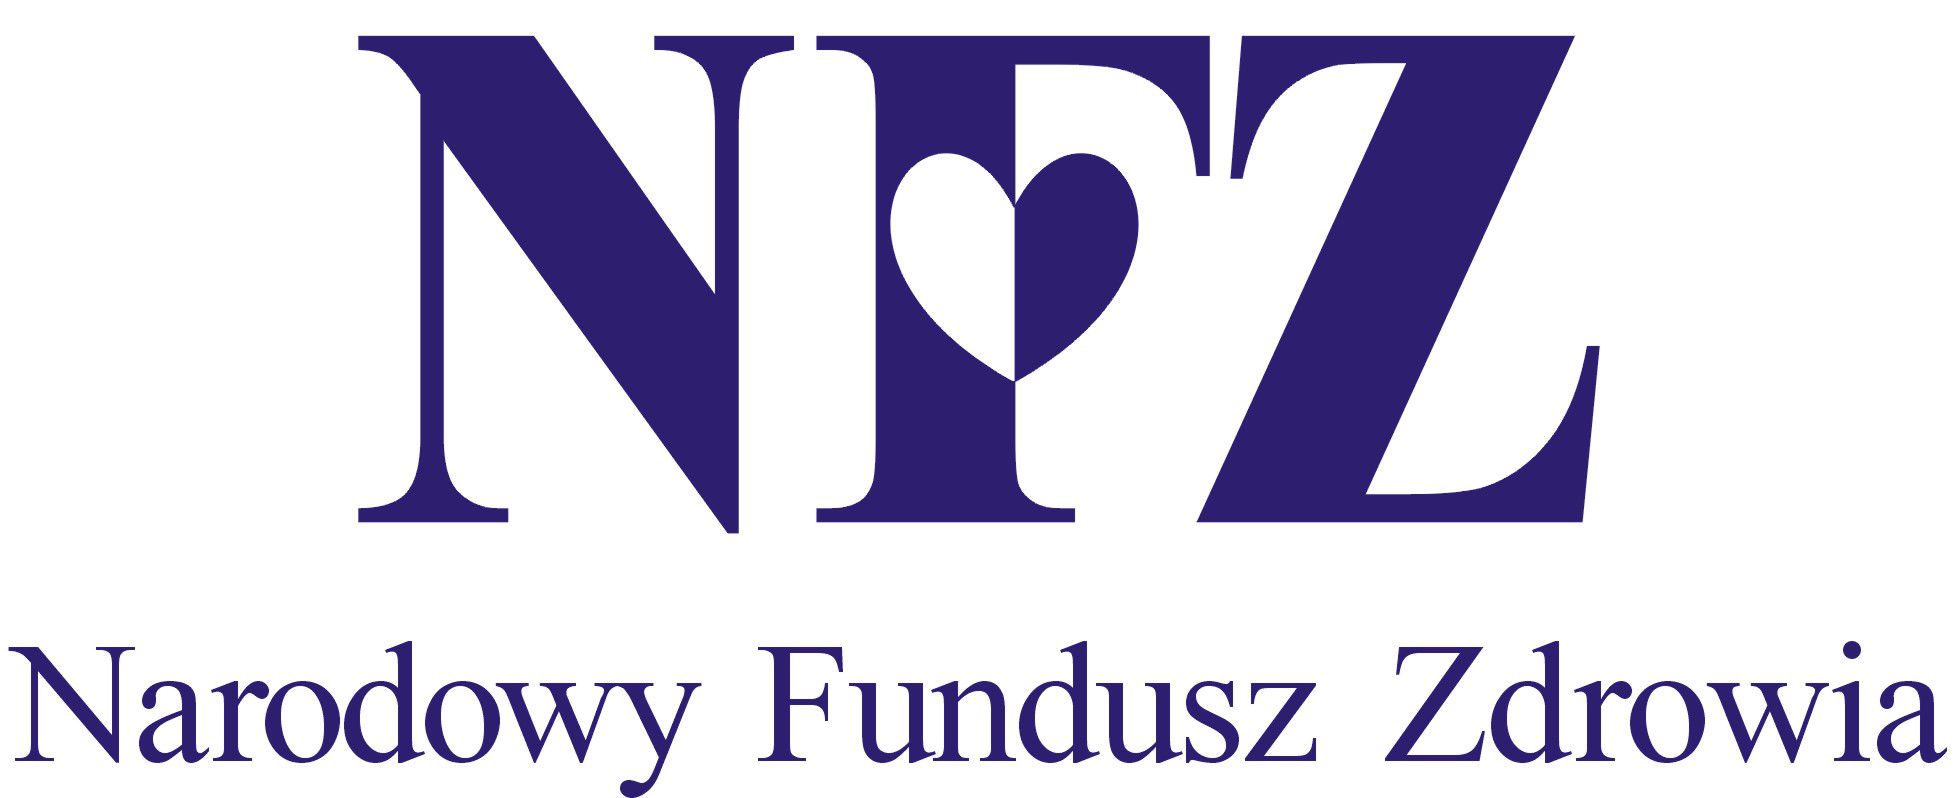 Logo NFZ usługi medyczne dla diabetyków